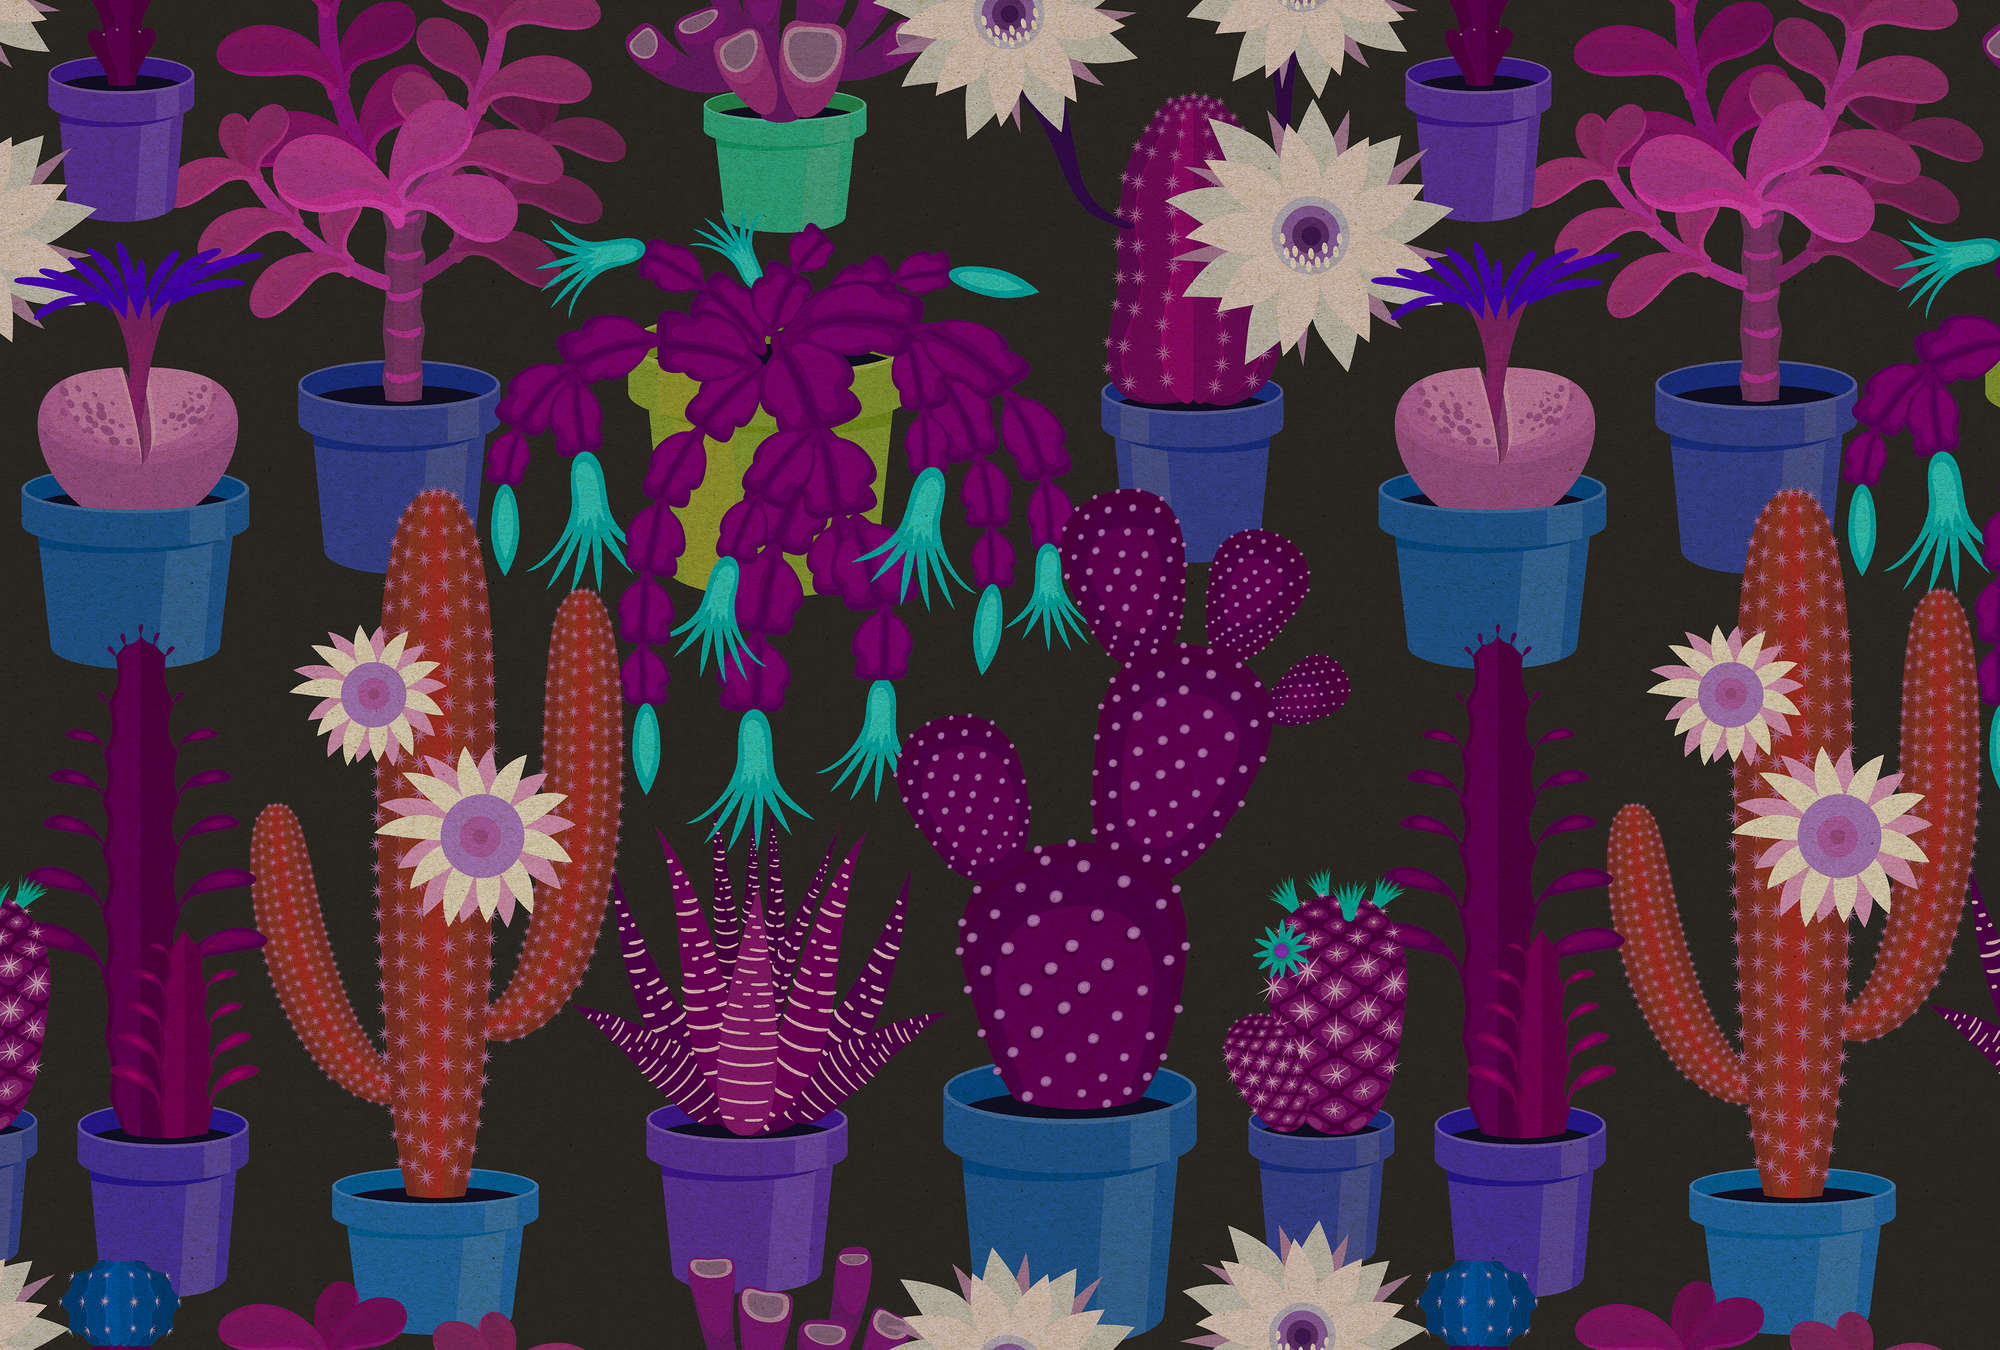             Giardino dei cactus 1 - carta da parati in struttura di cartone con cactus colorati in stile fumetto - blu, arancione | vello liscio madreperlato
        